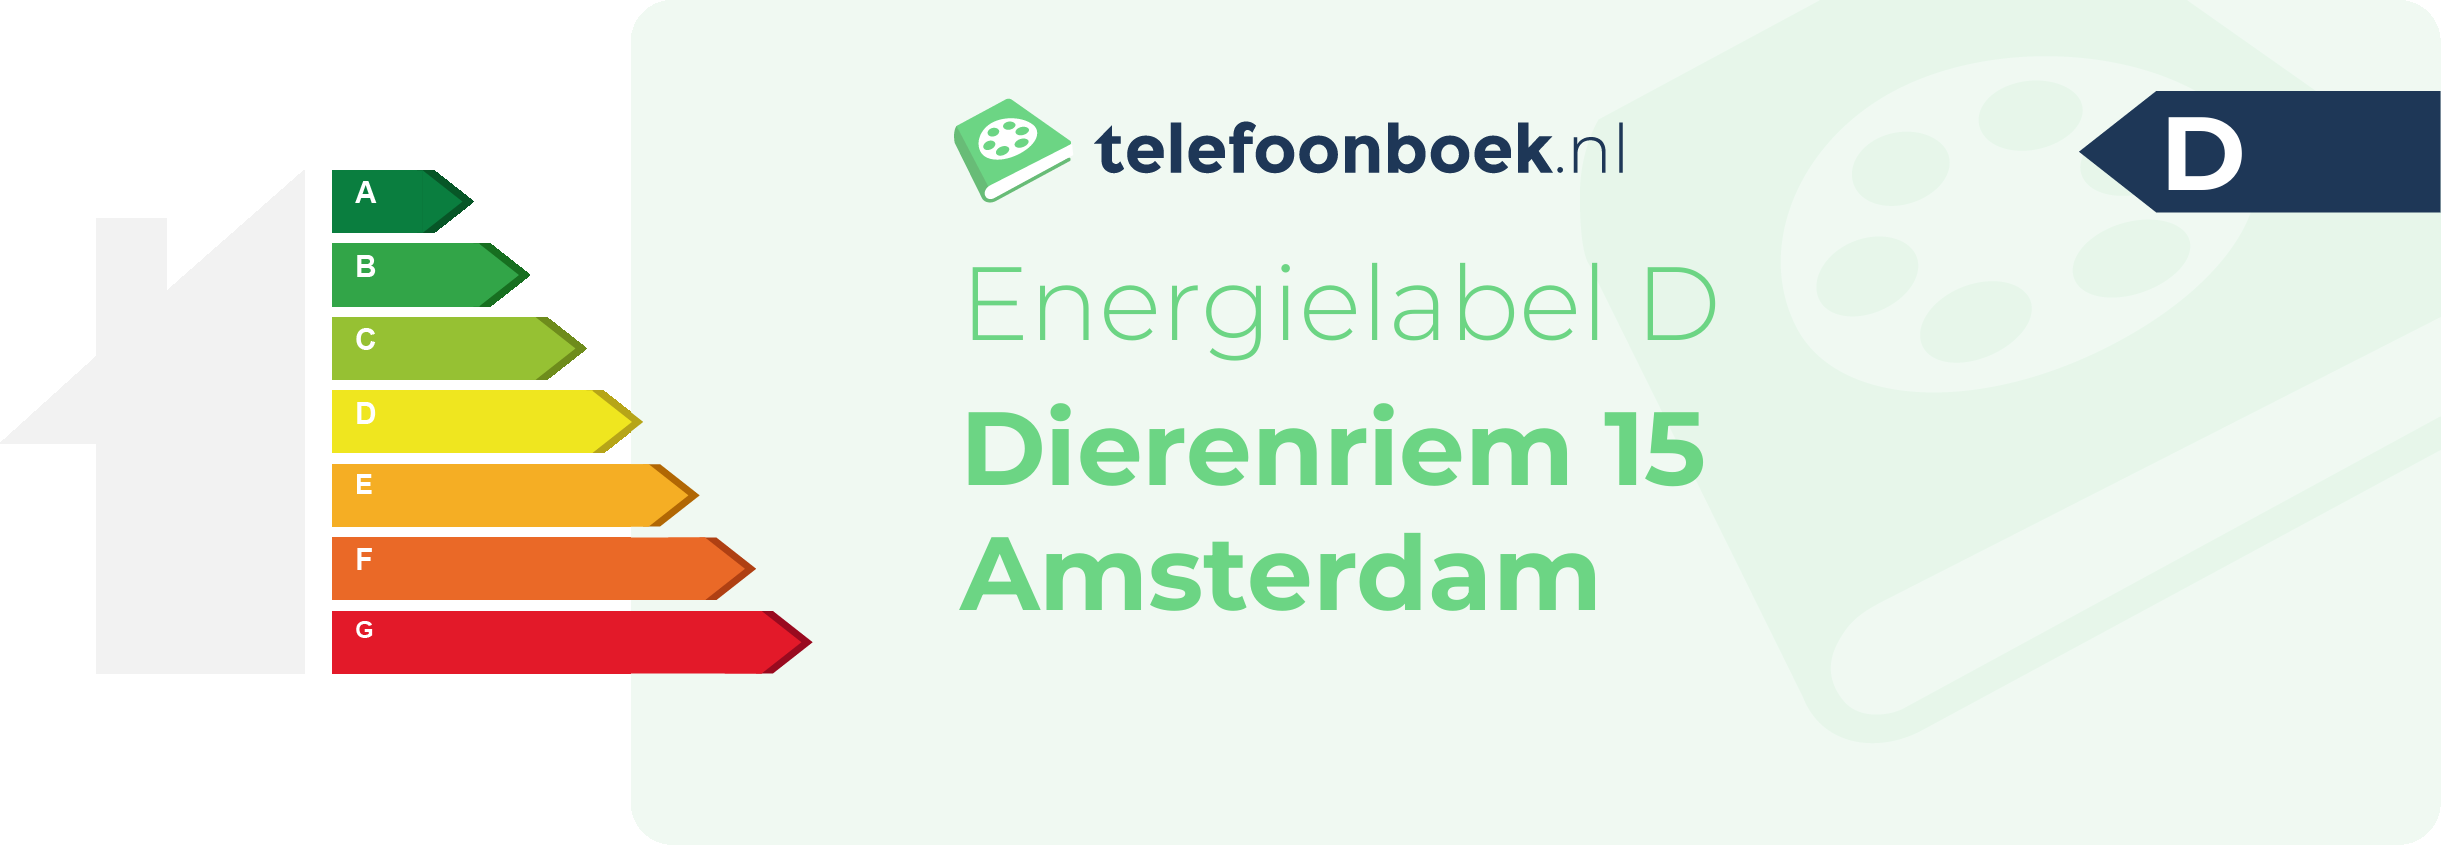 Energielabel Dierenriem 15 Amsterdam